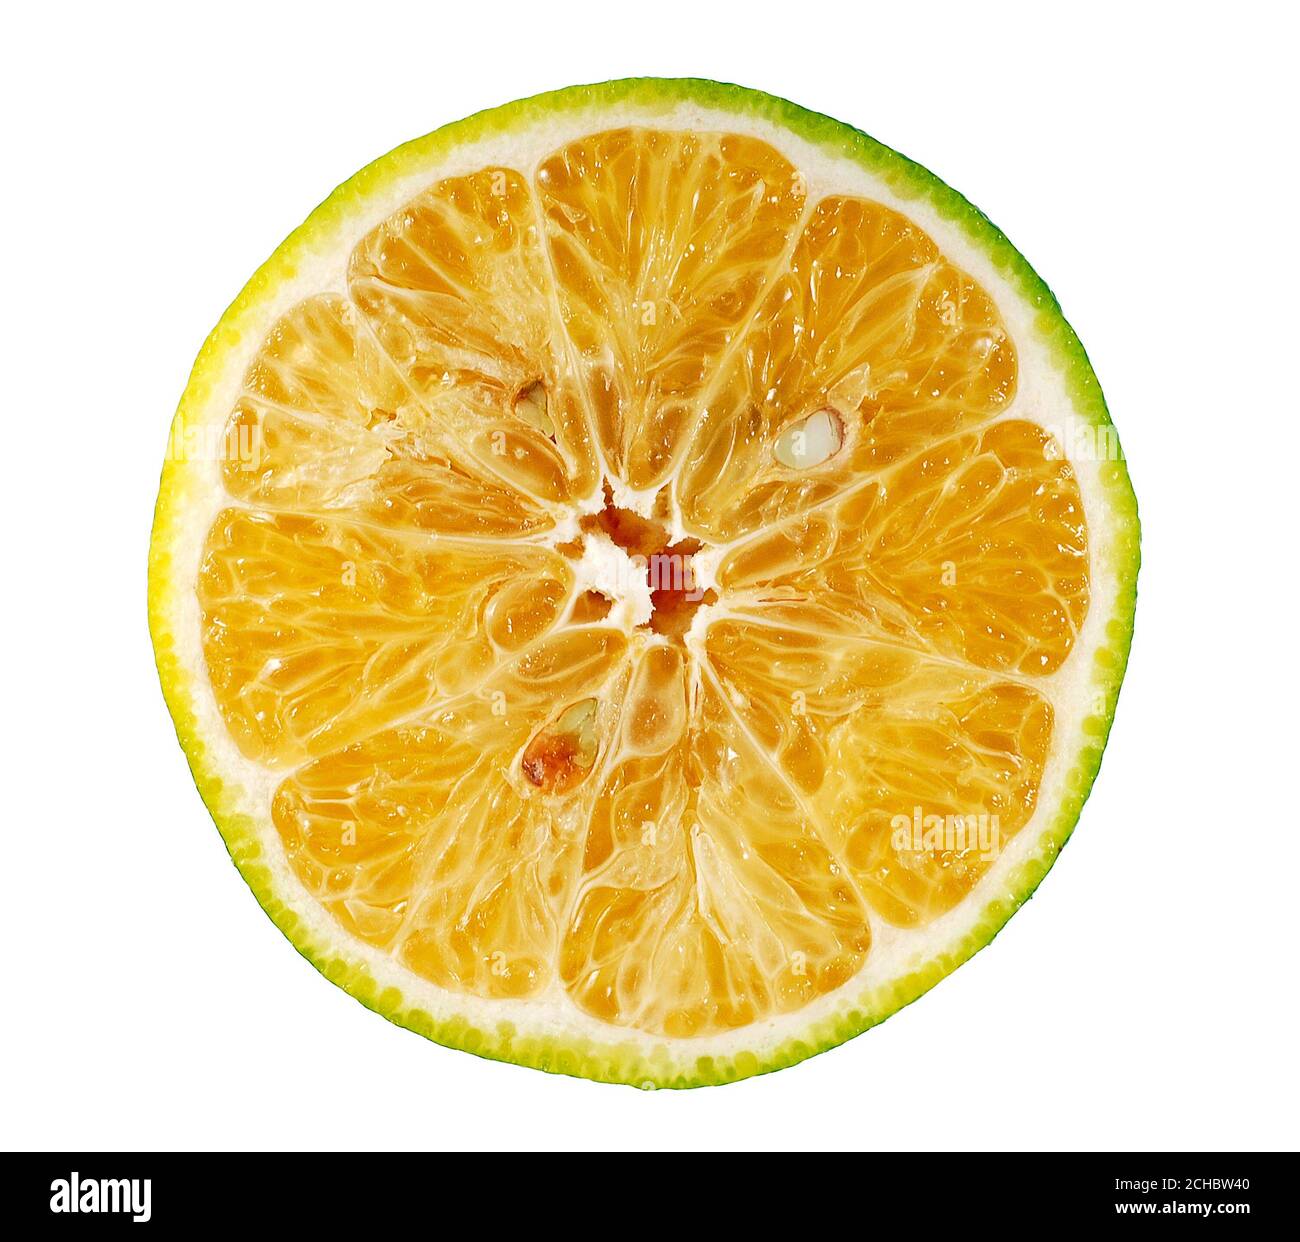 Calamansi or Green orange fruits isolated on white background Stock Photo